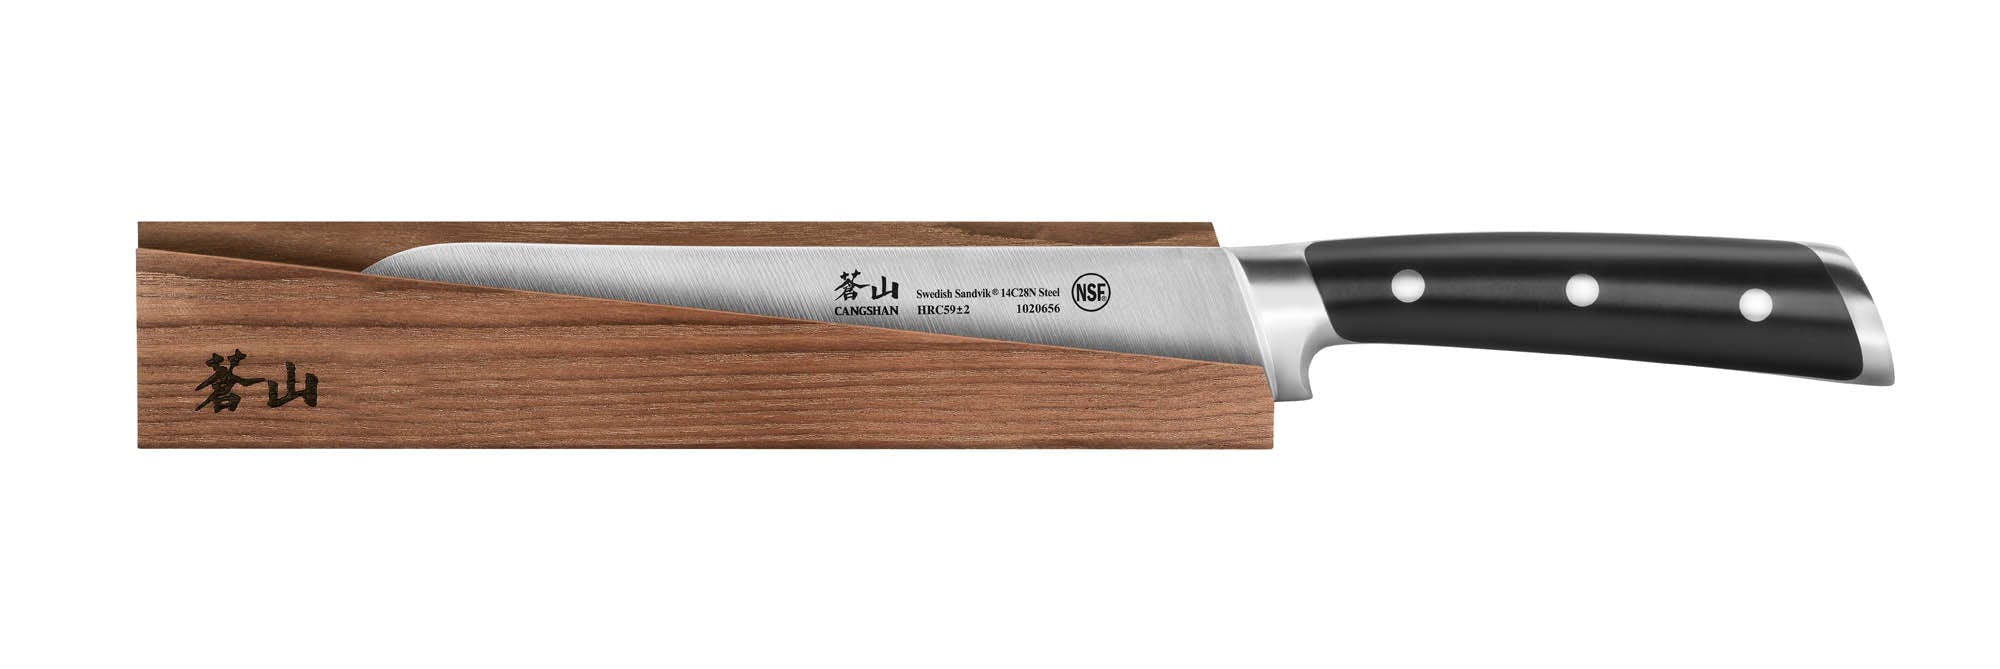 Cangshan TS Series Bread Knife, 8"